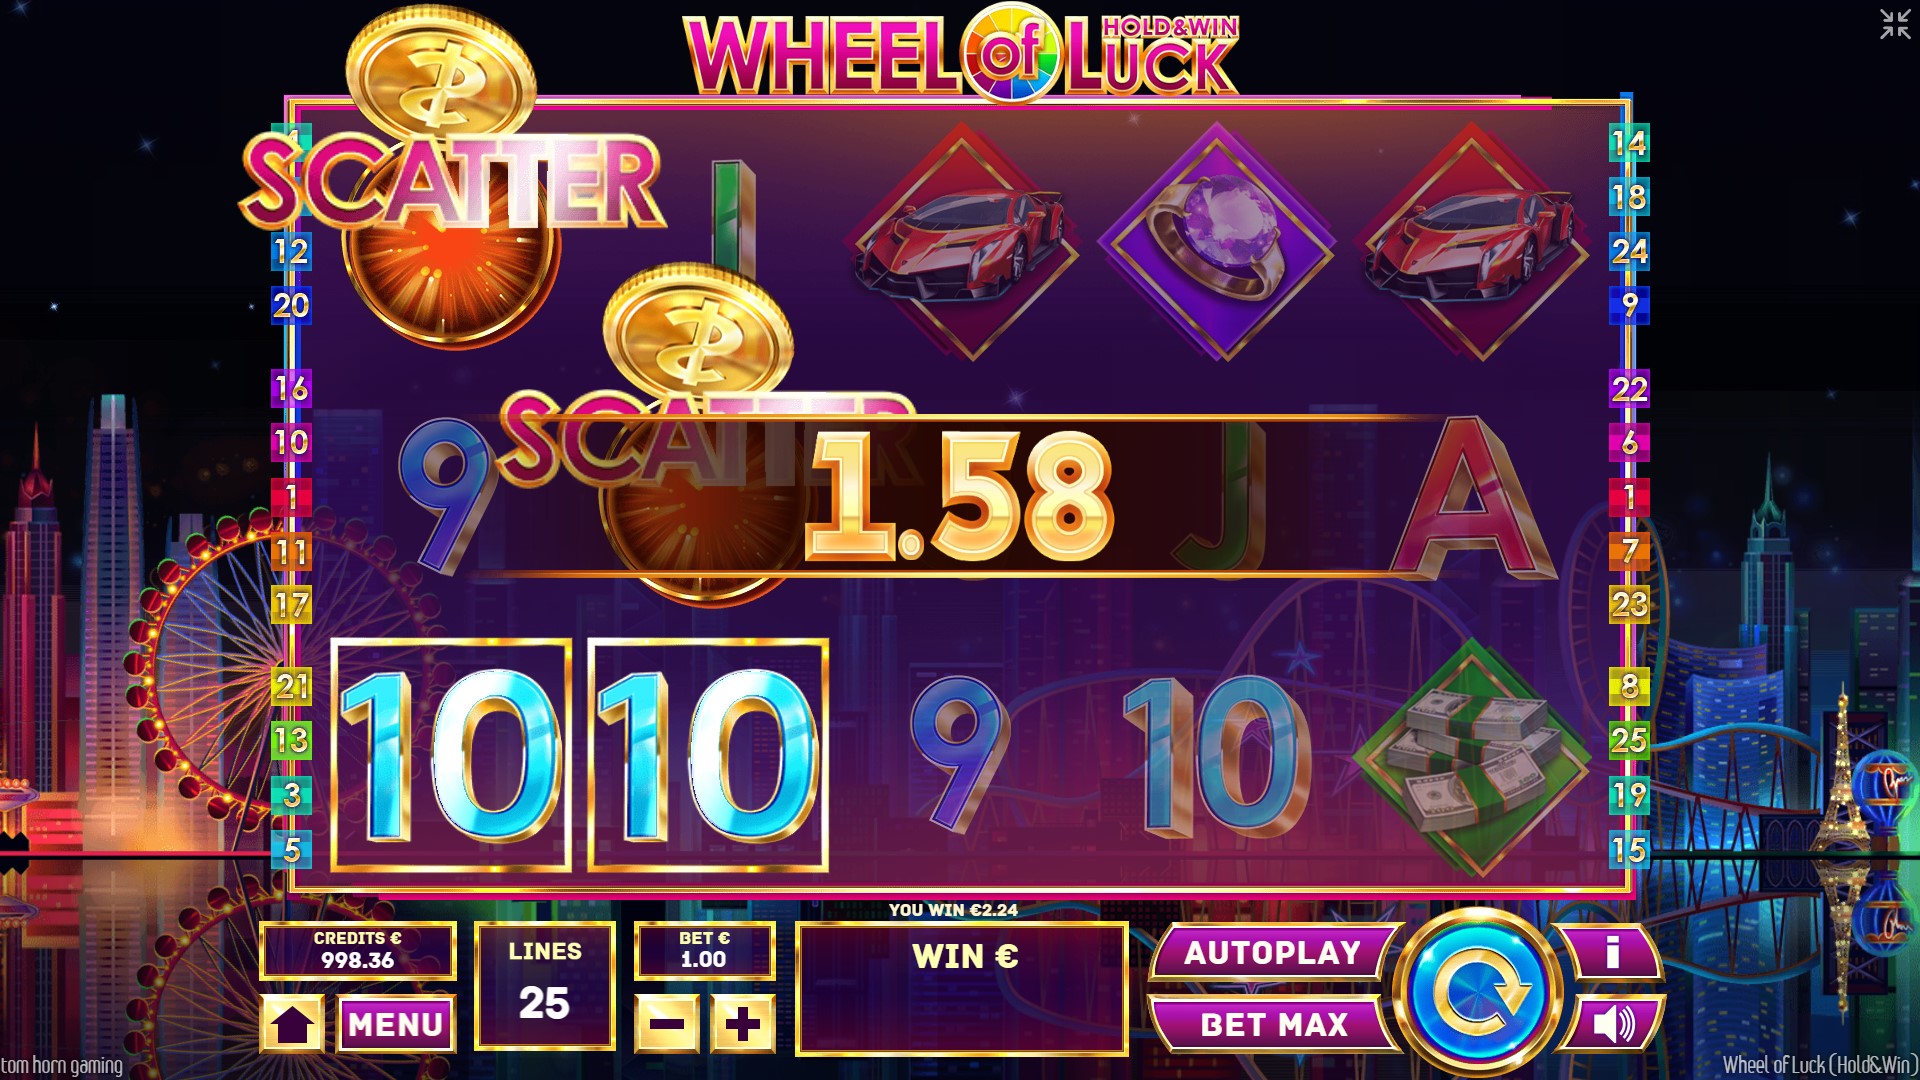 Wheel of Luck Tom Horn Gaming